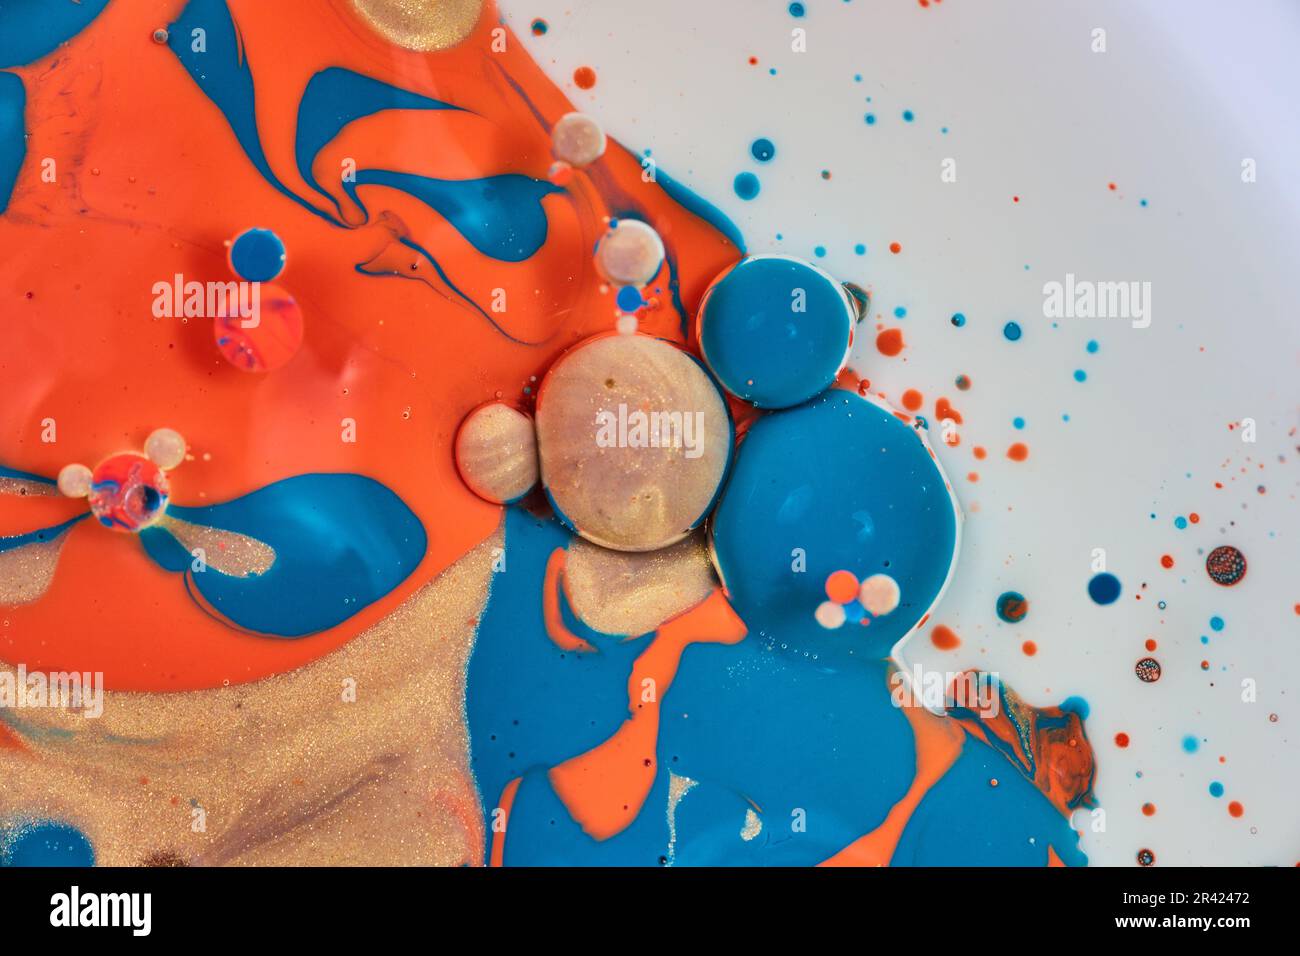 Pittura astratta verticale con fondo bianco e macchie di oro blu e vernice acrilica arancione con bolle d'olio in un cluster Foto Stock